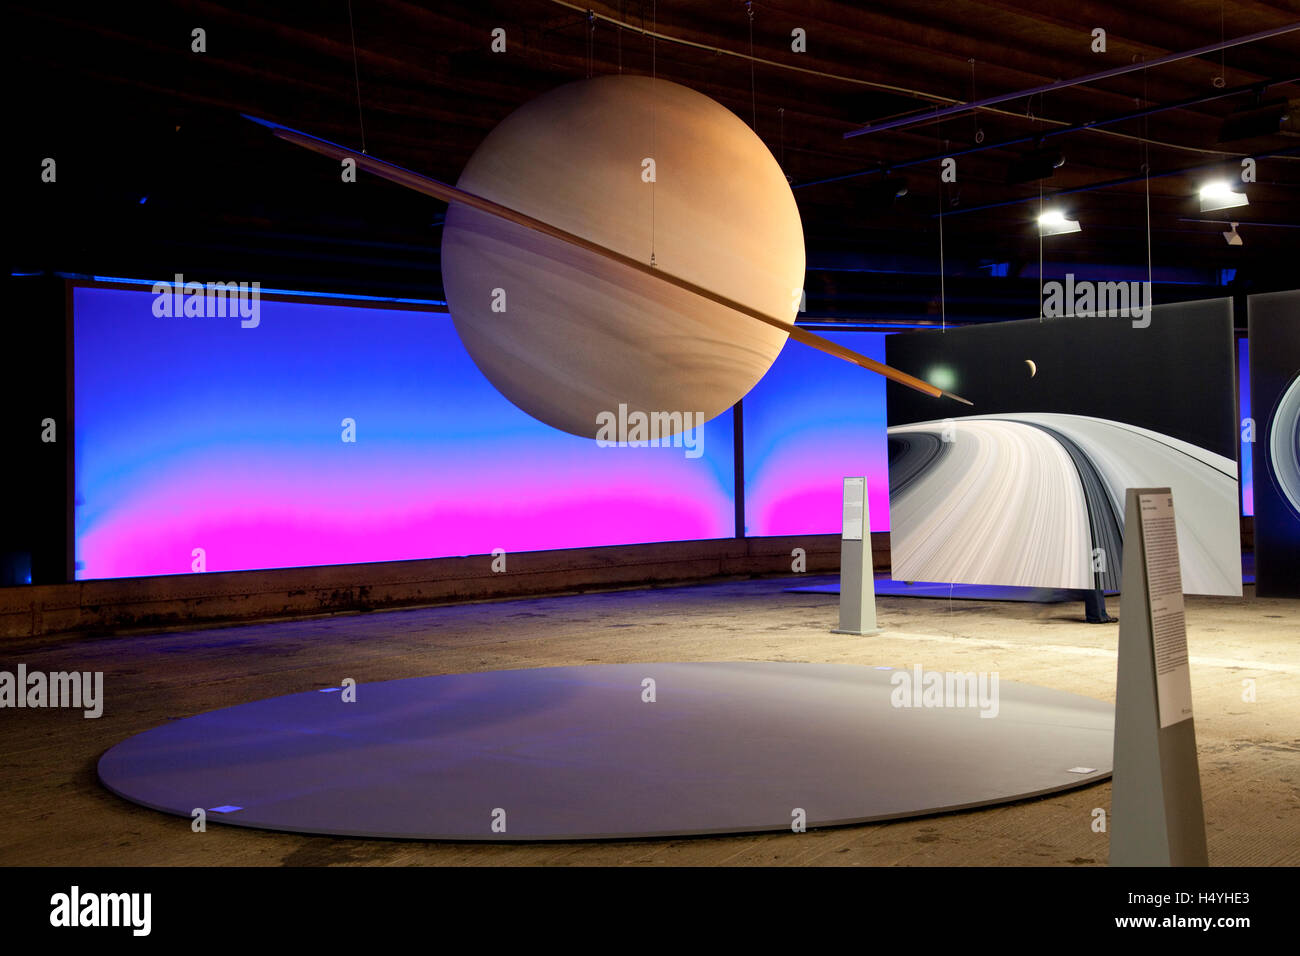 Saturne, planète avec un système d'anneaux, la sculpture de la planète Saturne, exposition Sternstunden, merveilles du système solaire Banque D'Images